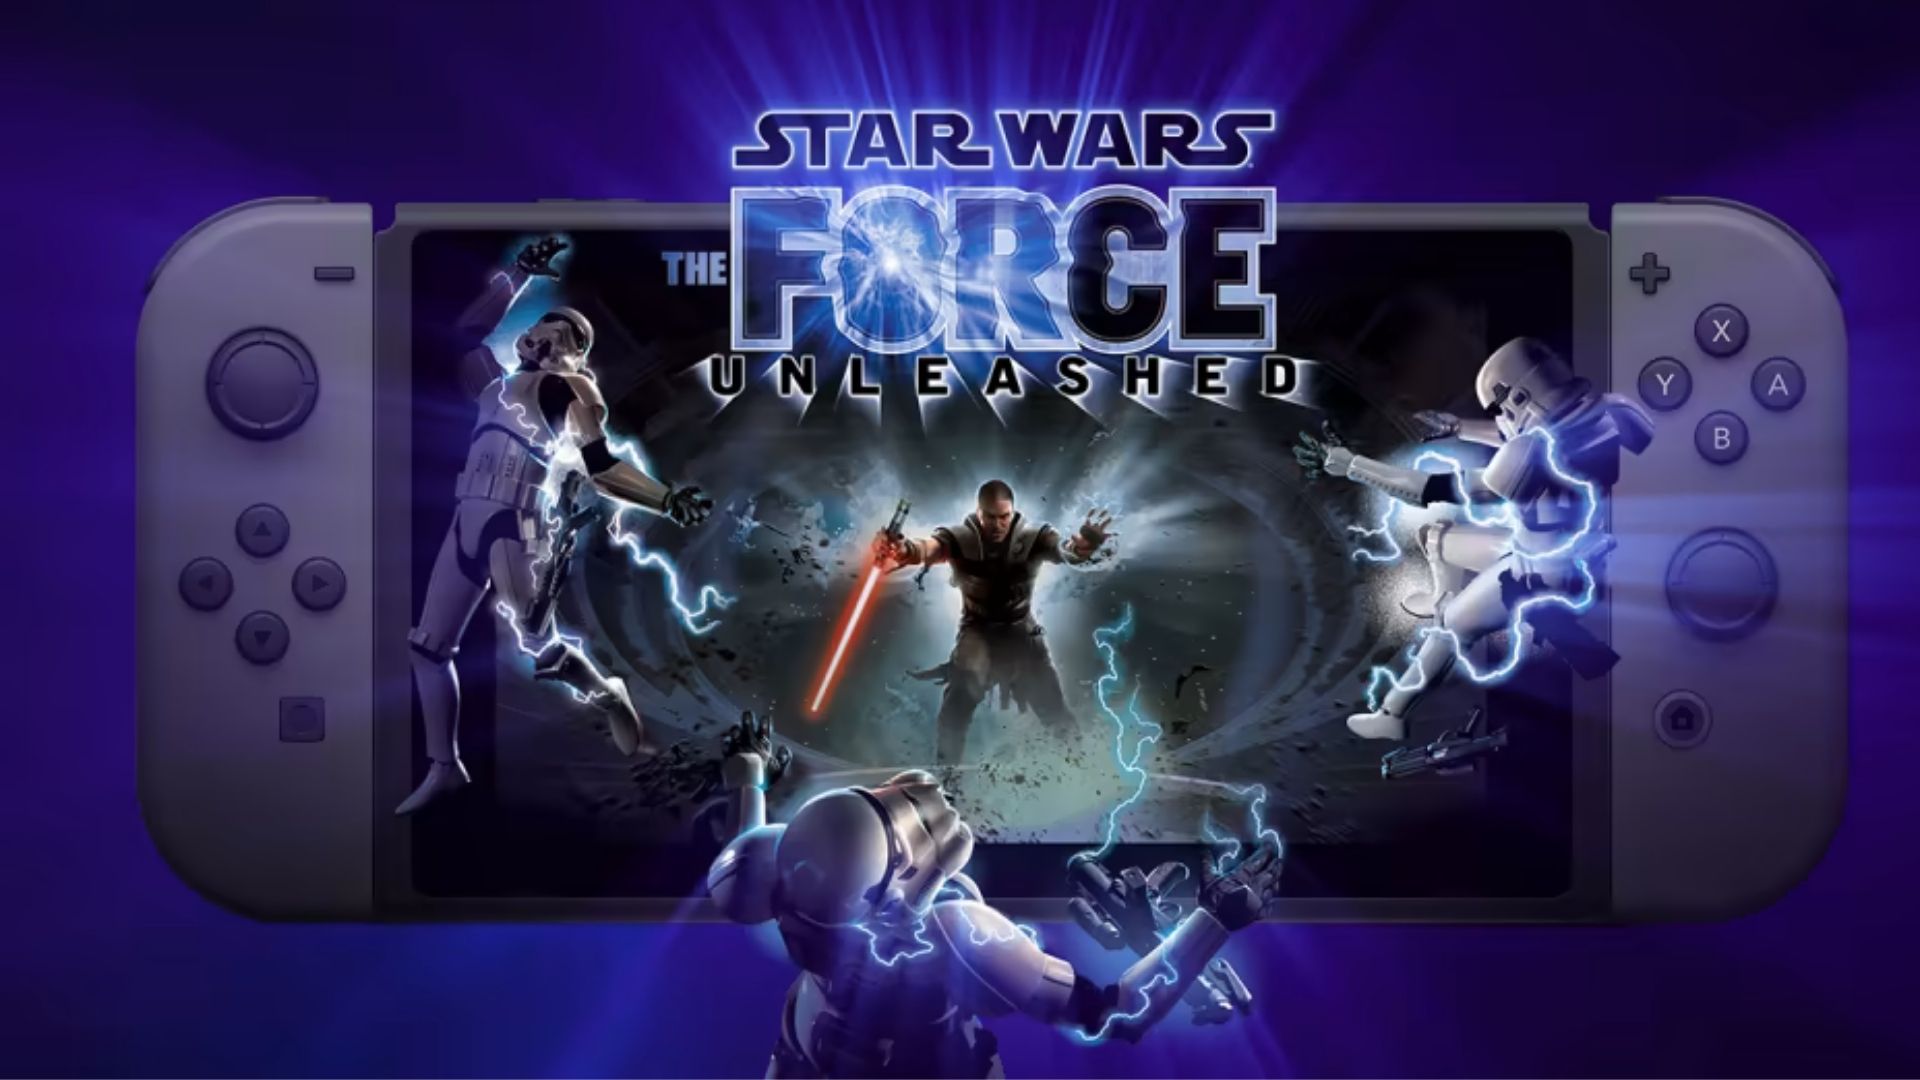 Star Wars: The Force Unleashed für Switch angekündigt Titel